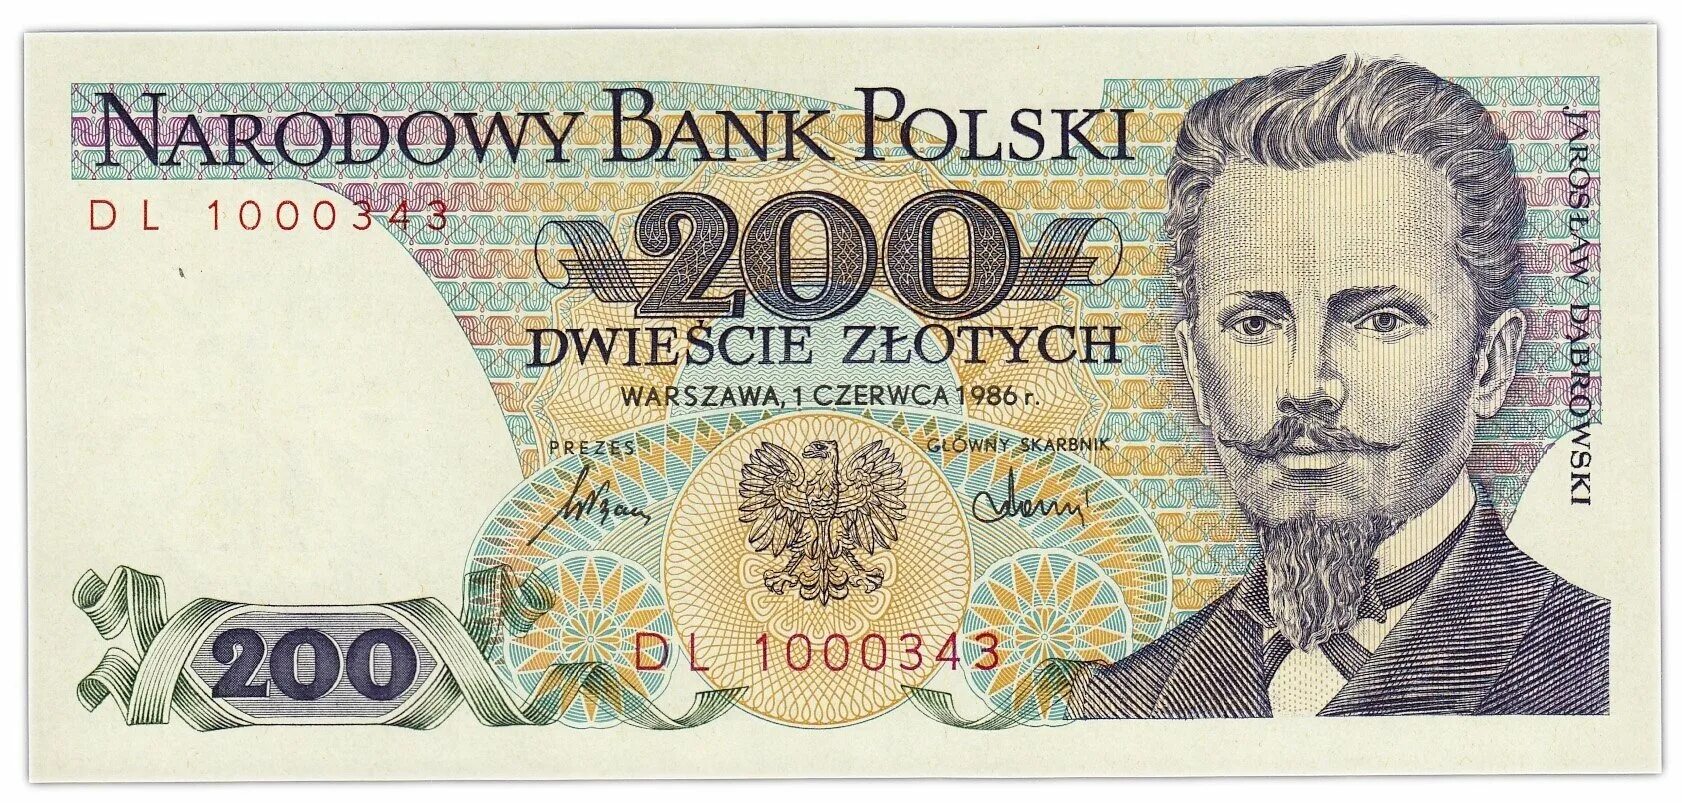 Польская денежная единица. Банкнота 200 zlotych 1988. 200 Польских злотых. 200 Польских злотых 1988. Польша 200 злотых 1988 года.